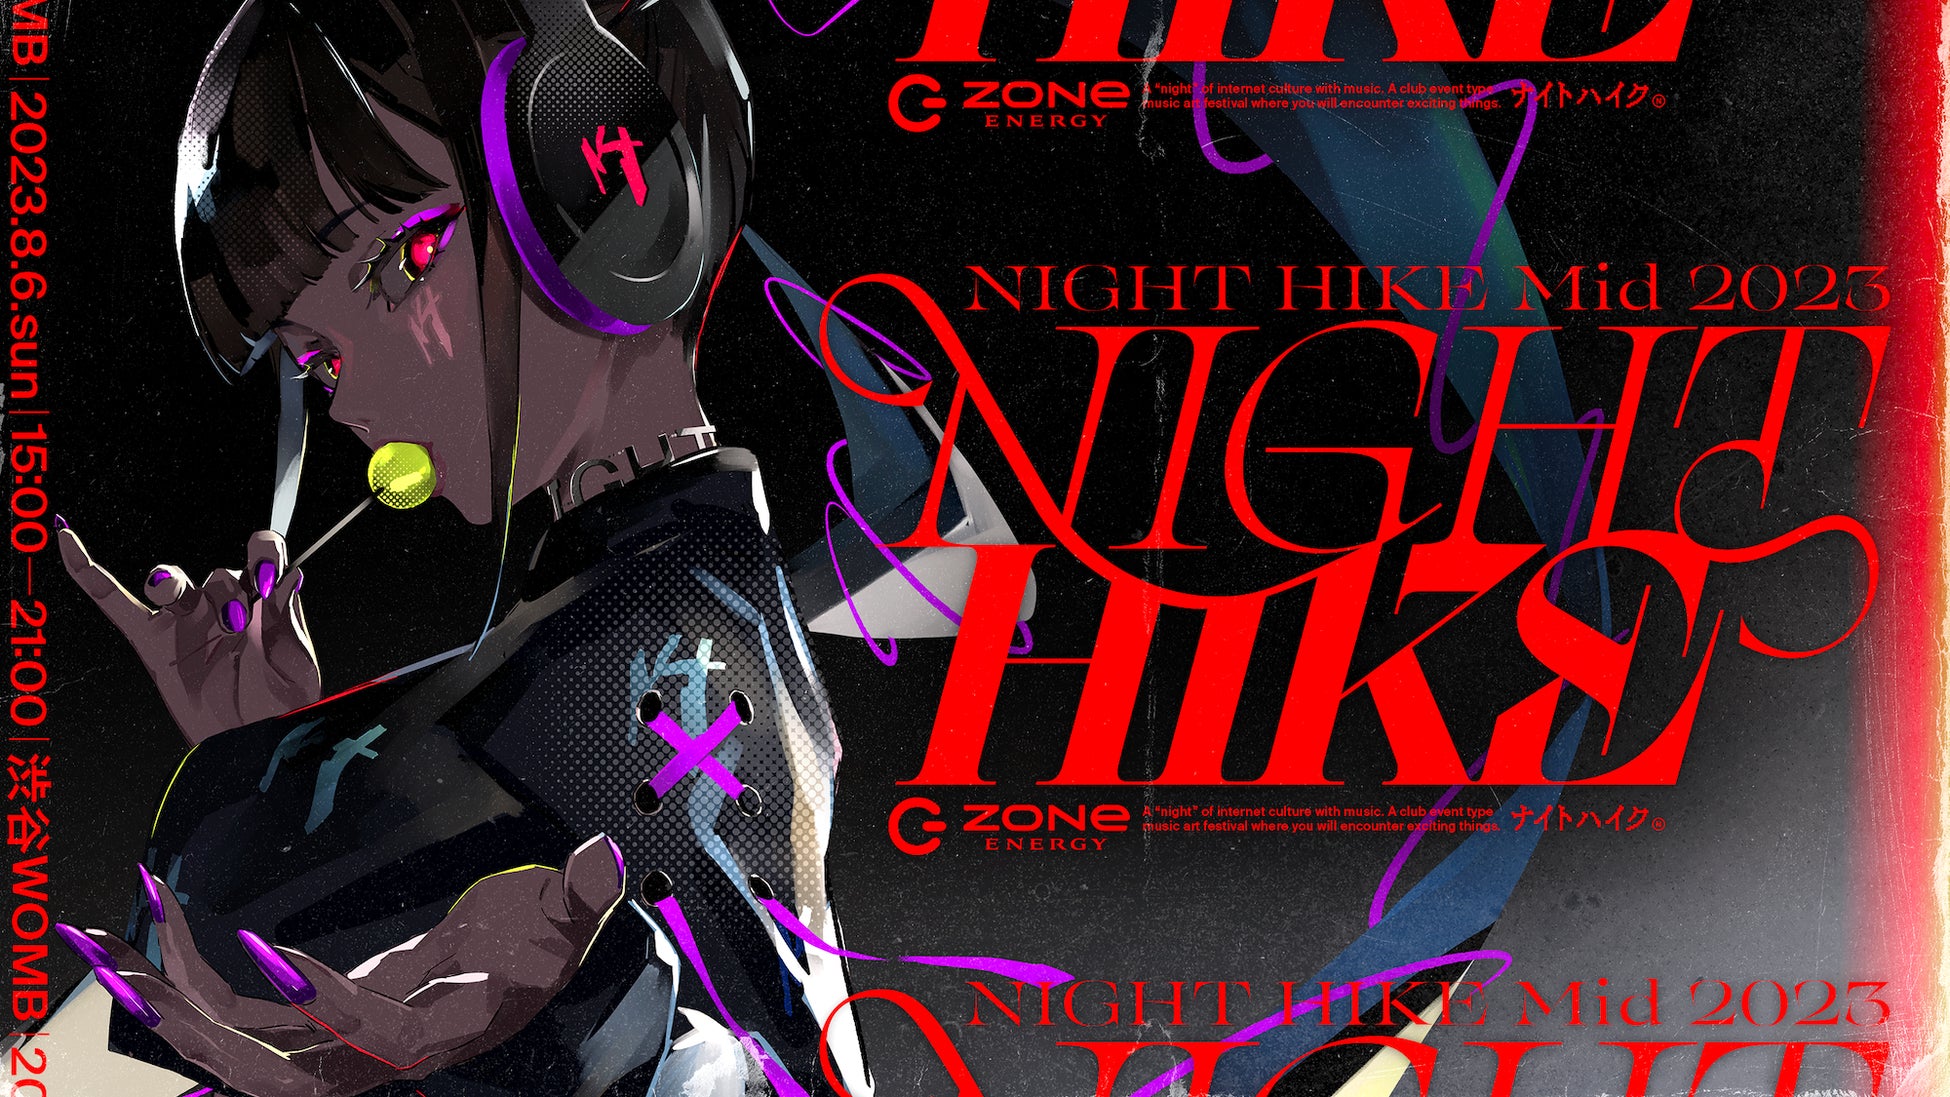 ネットカルチャーを融合させるクラブイベント型のミュージックアートフェス『NIGHT HIKE』を渋谷WOMBにて開催